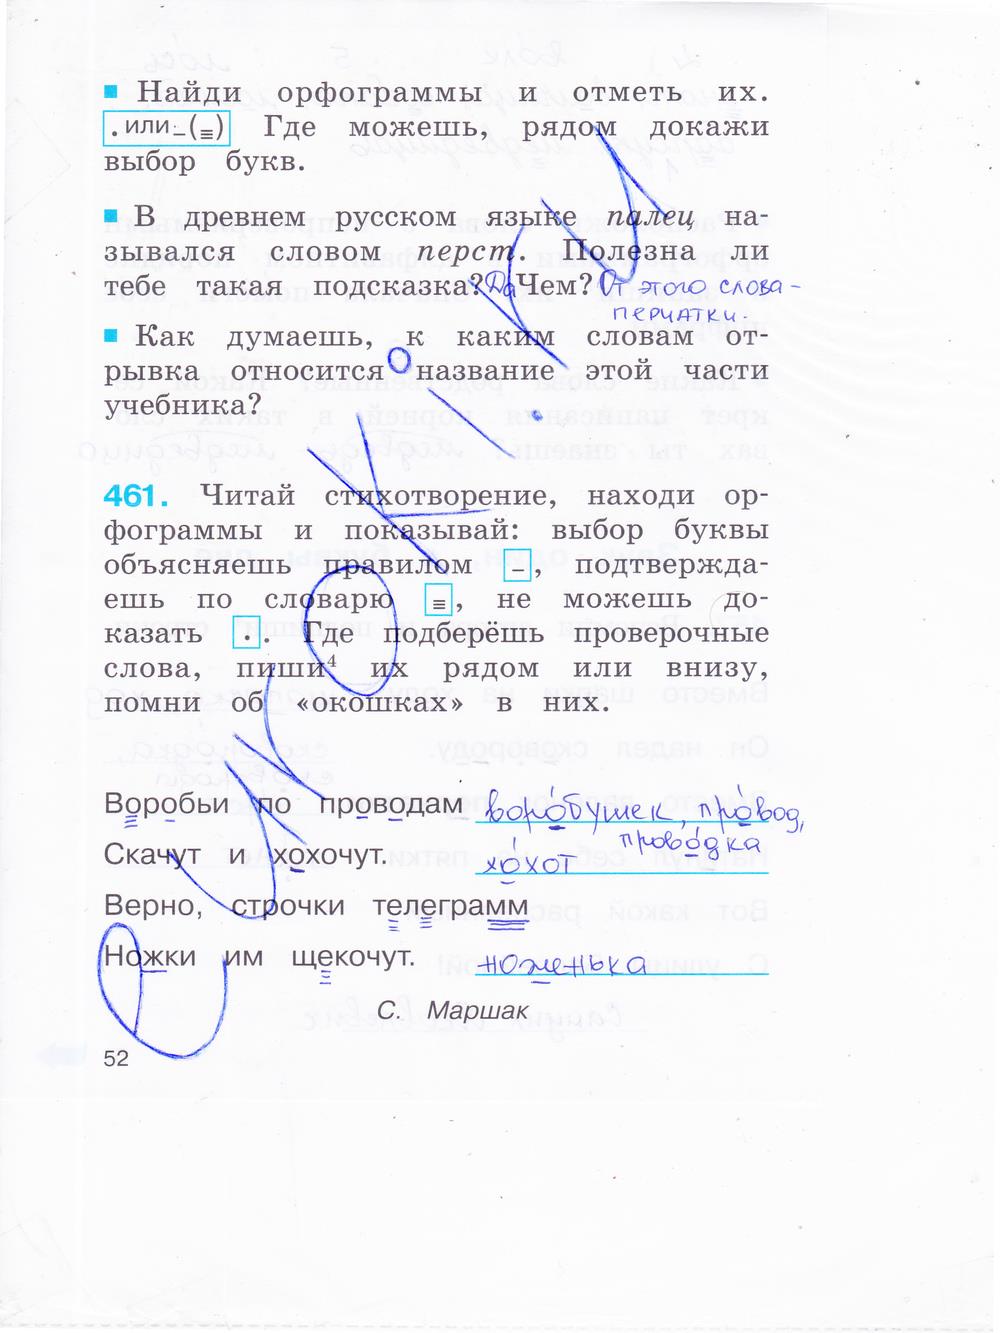 гдз 2 класс рабочая тетрадь часть 2 страница 52 русский язык Соловейчик, Кузьменко